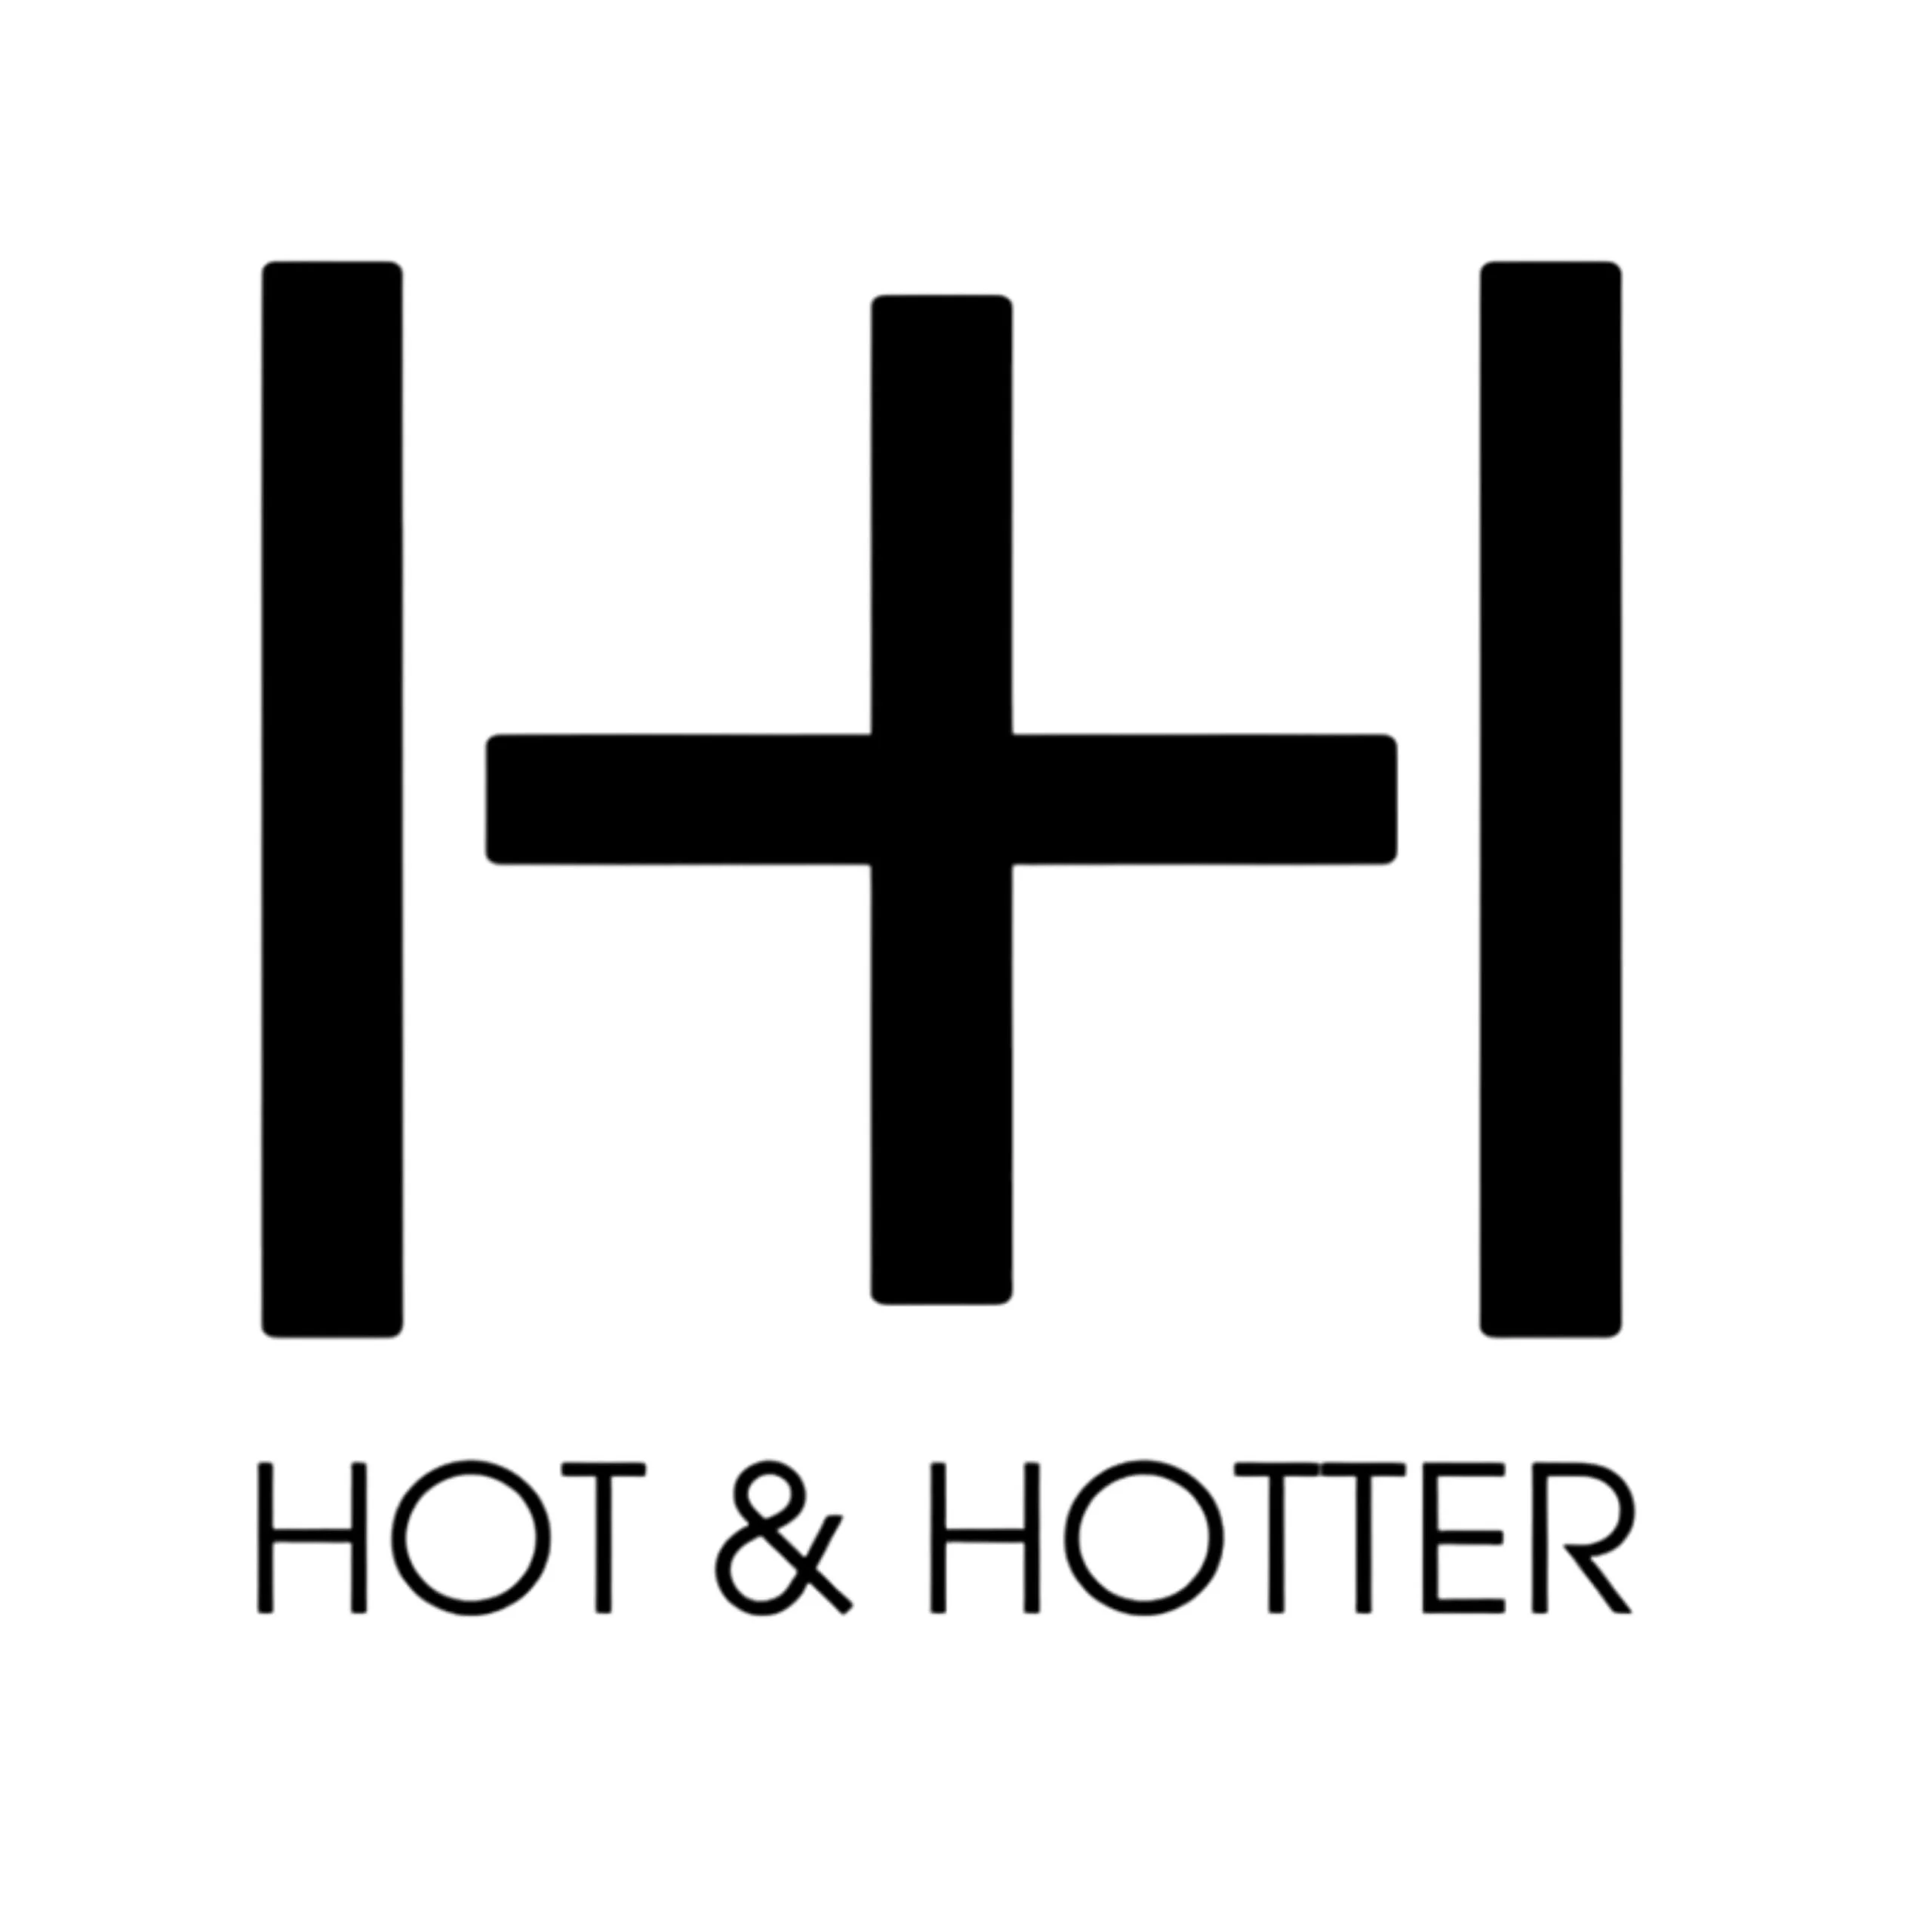 HOT & HOTTER